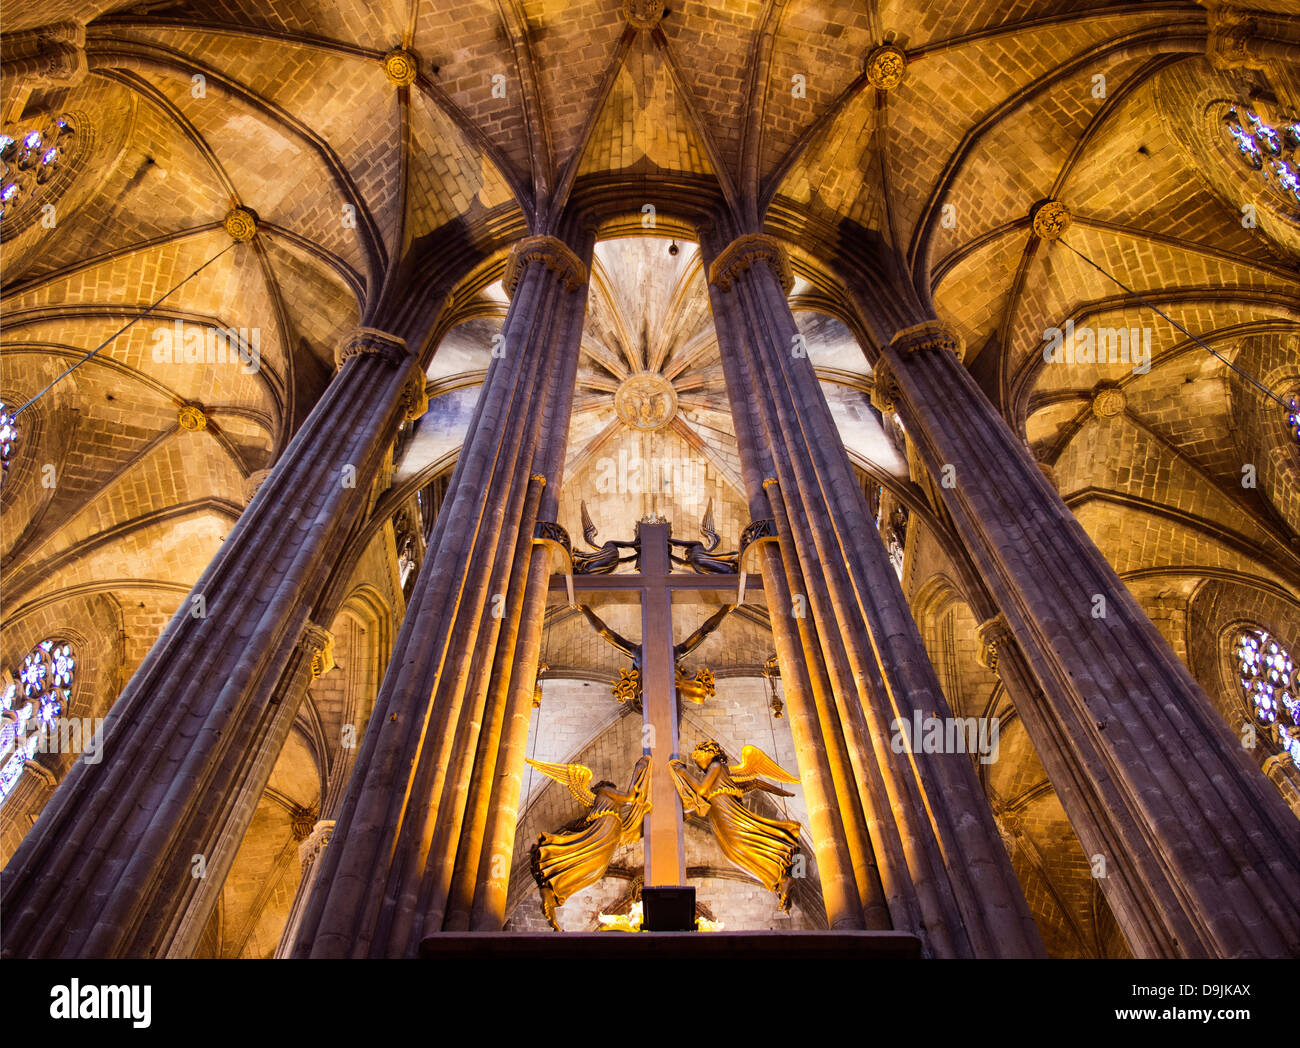 Intérieur de la cathédrale Santa Eulalia dans le quartier gothique de Barcelone, Espagne 1 Banque D'Images